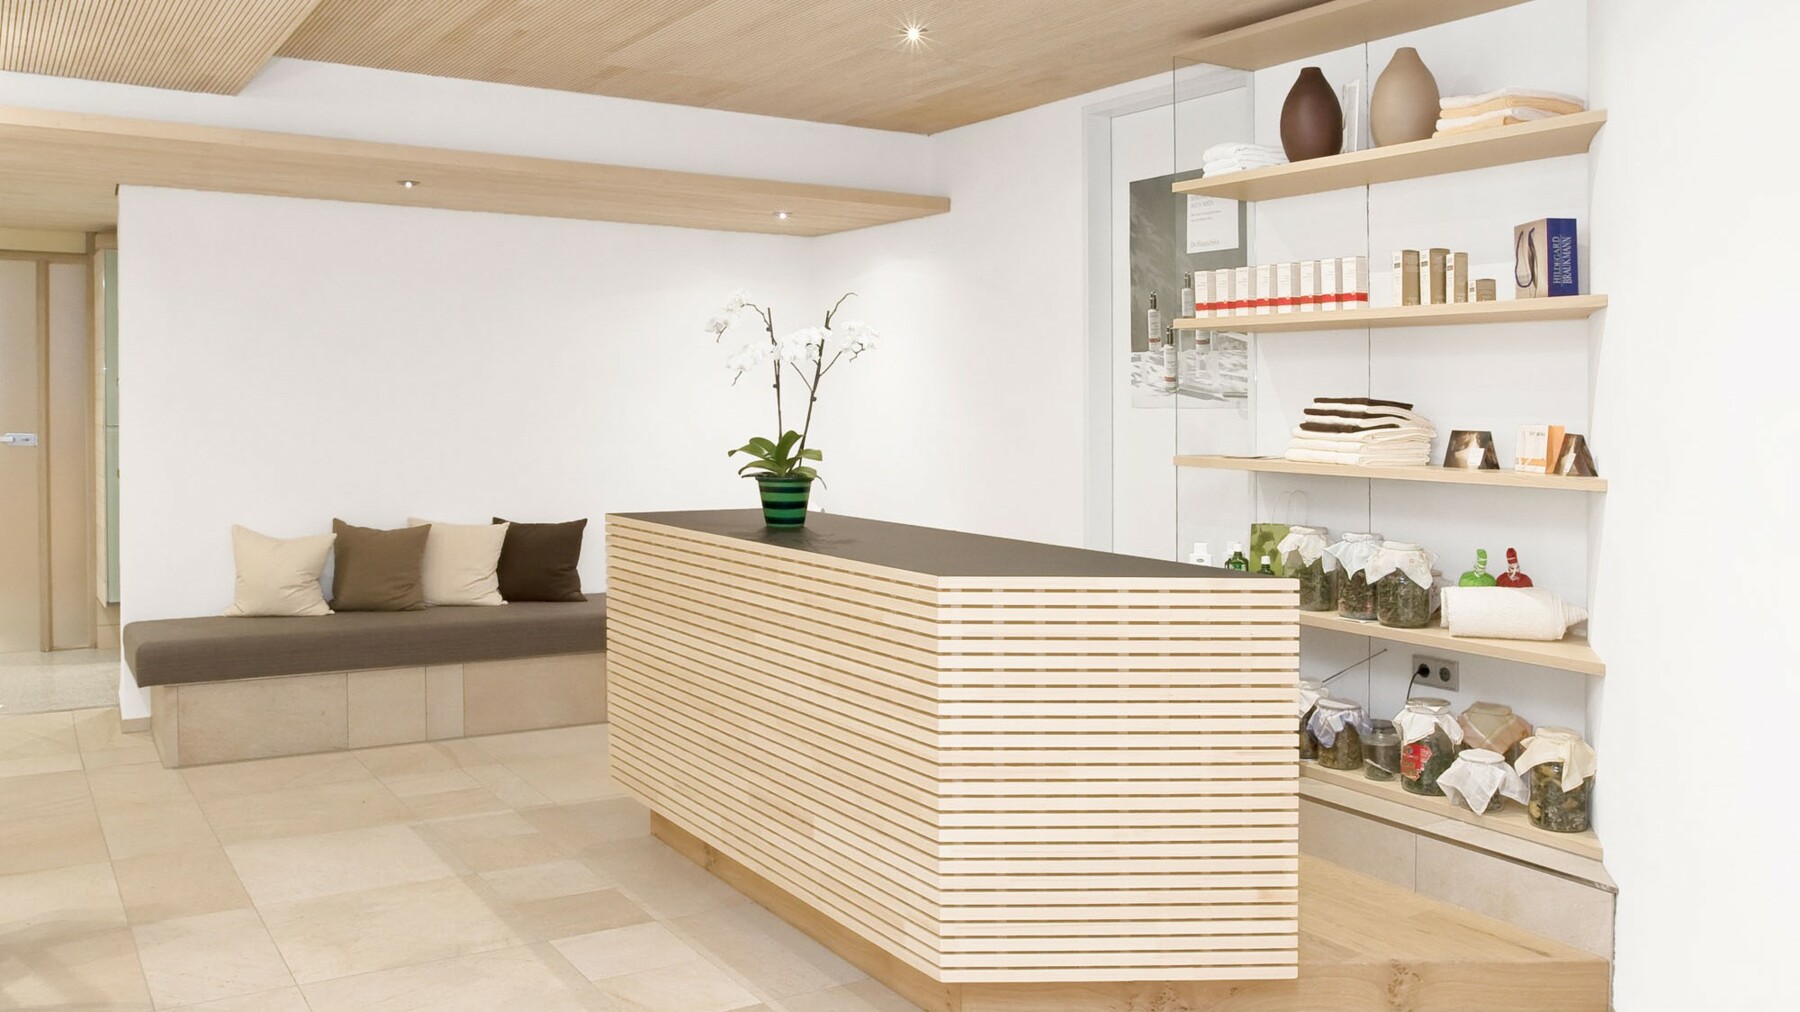 Das helle LIGNO® Weißholz schafft zusammen mit den weißen Wänden und Naturtönen eine ruhige, einladende Atmosphäre für Besucher. 